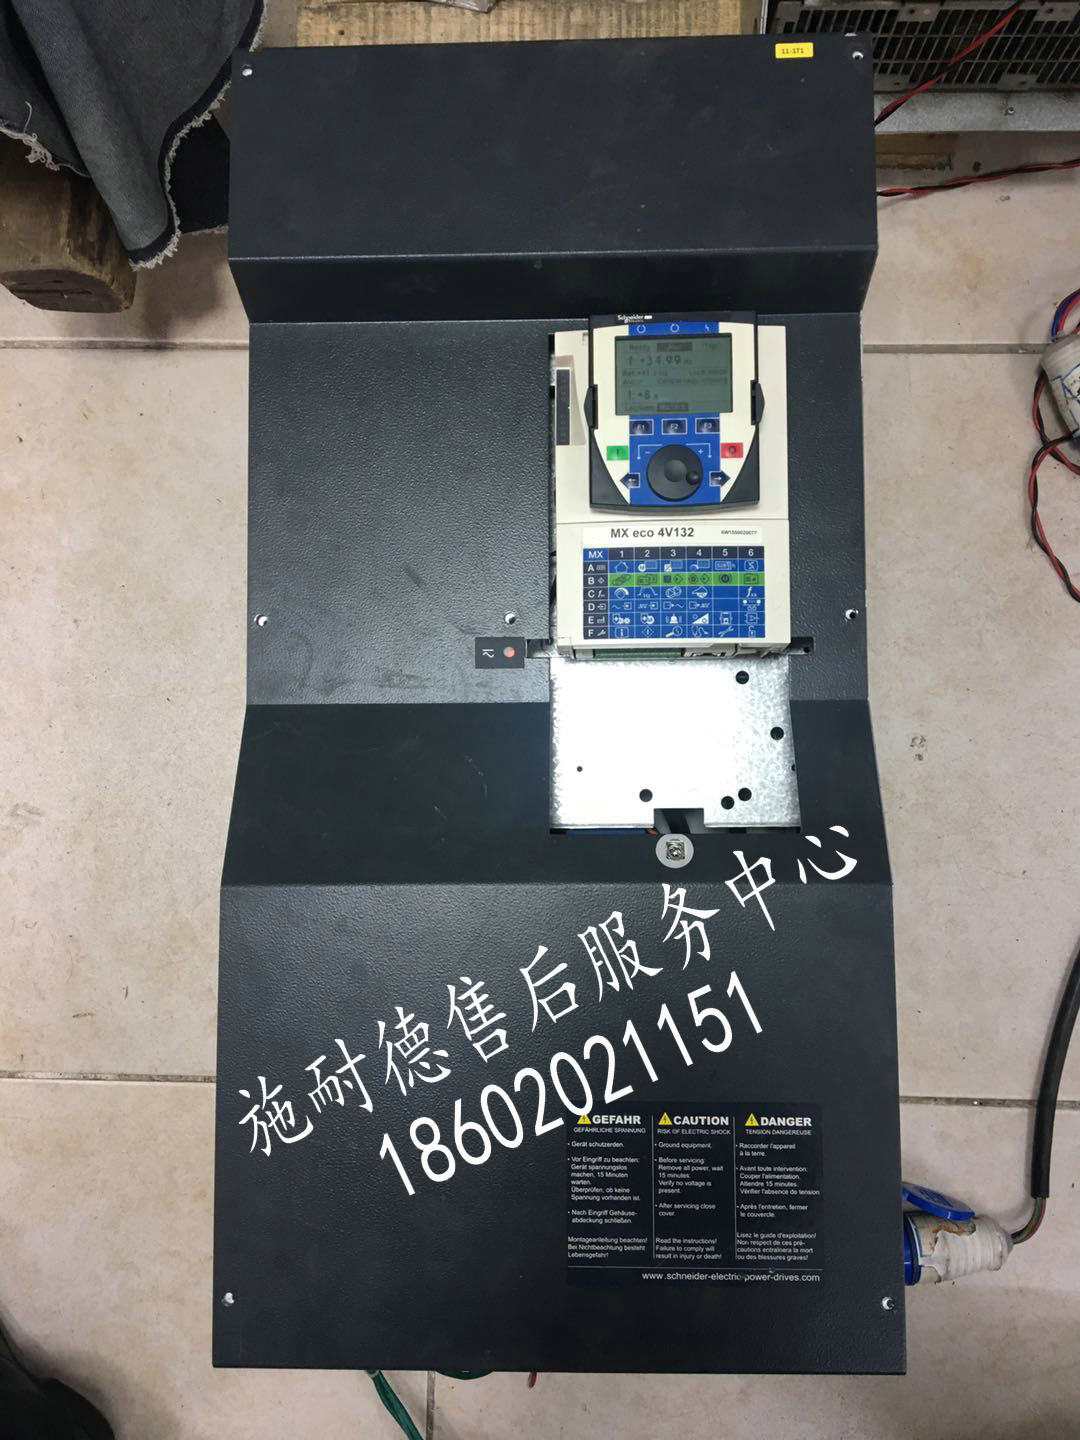 陕西省、甘肃省海瑞克盾构机PDRIVE eco 4V160变频器维修